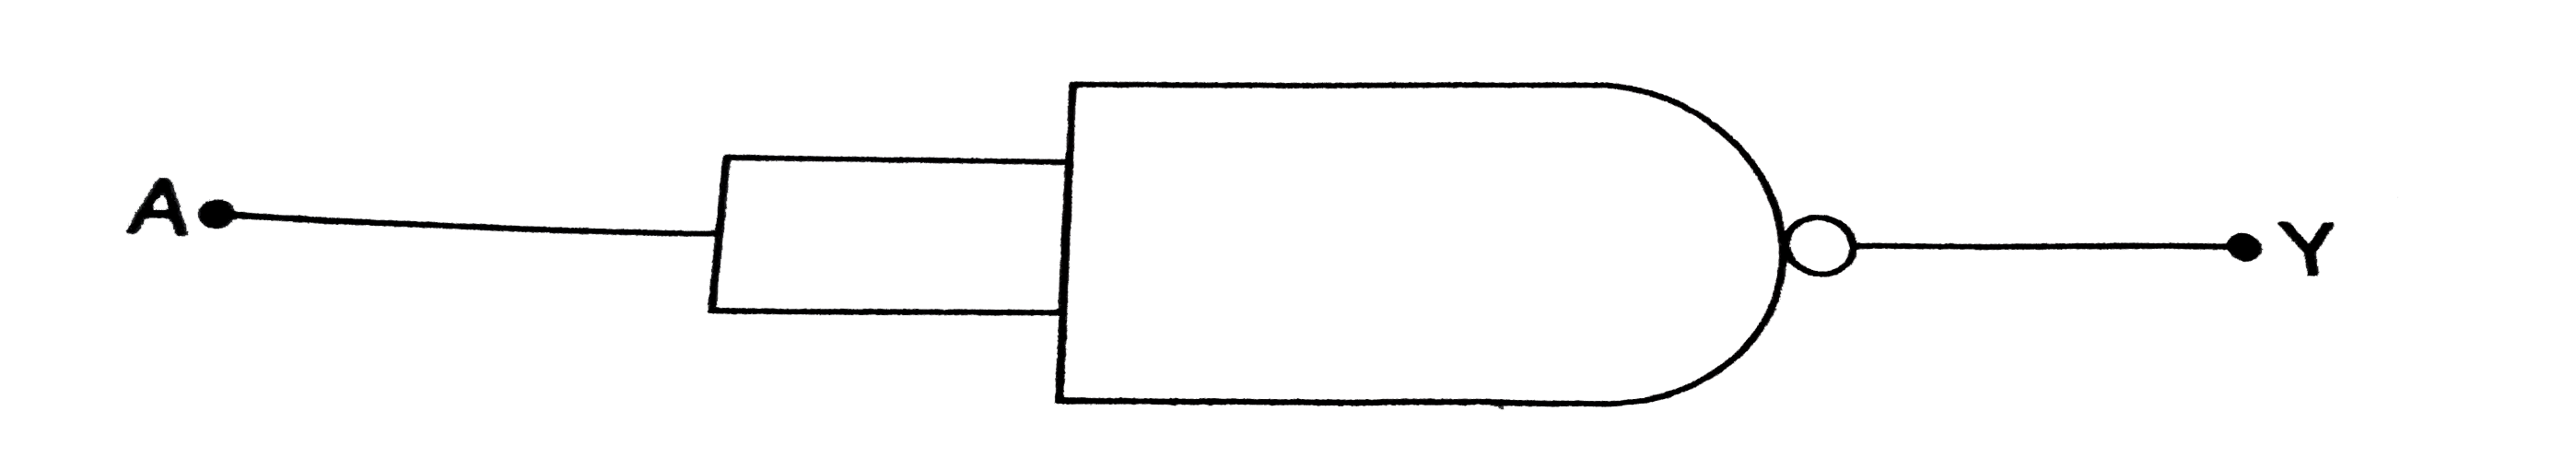 चित्र 6.4-3  में दिए गए  NAND गेट का टूथ टेबुल दे । अतः इस परिपथ द्वारा किये गए सही तर्क क्रिया ( exact logic operation) की पहचान करे ।